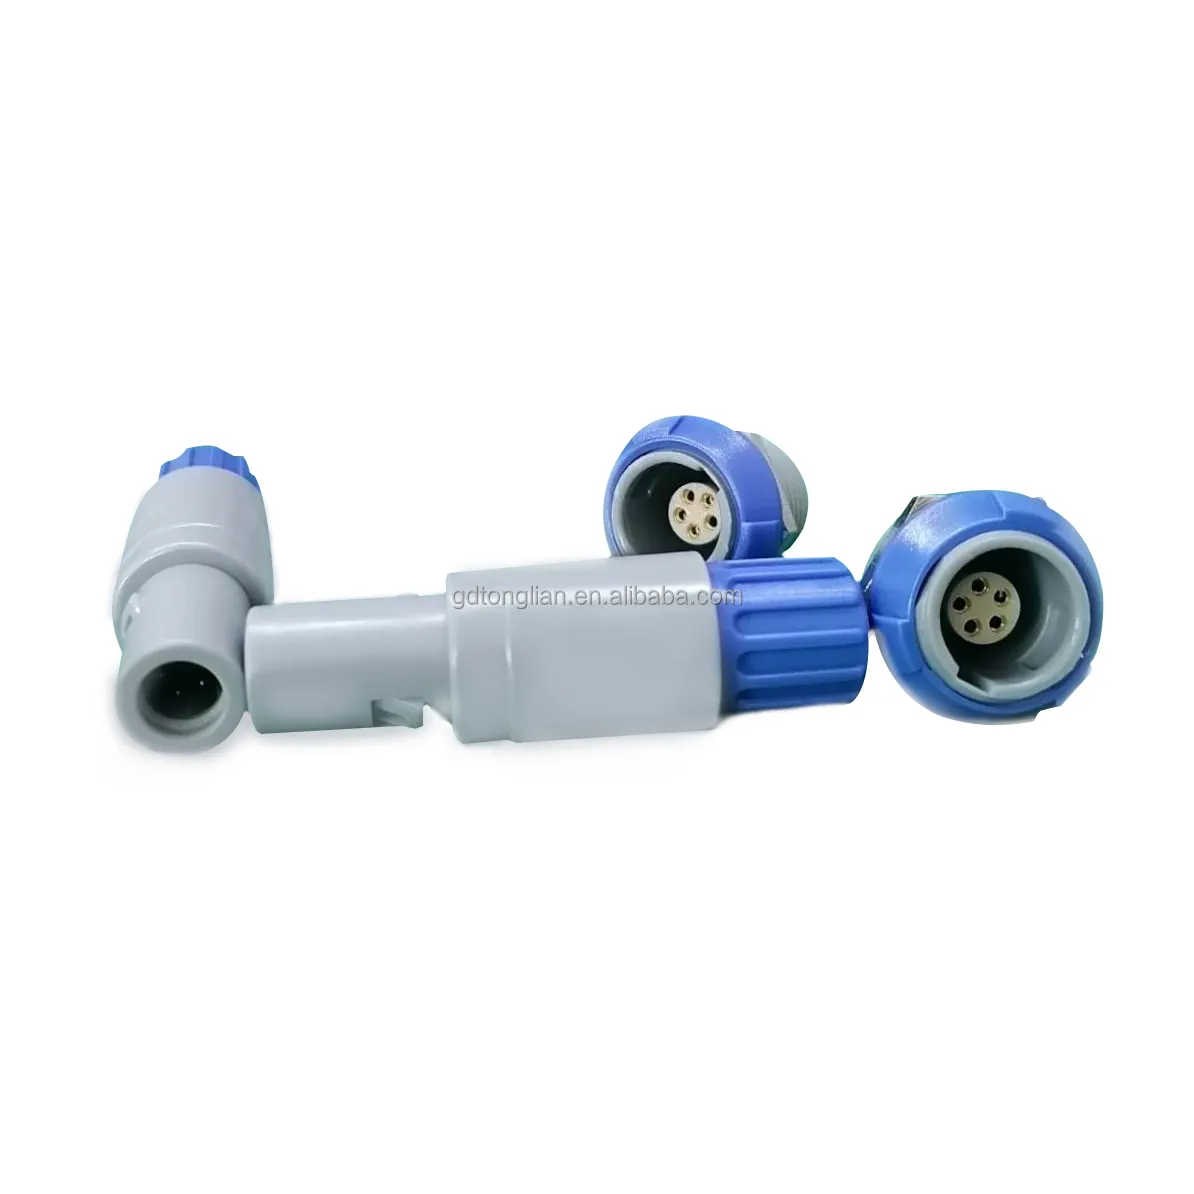 カスタム医療機器プラスチックプッシュプル5ピン防水コネクタ1Pシリーズ青い円形PAGストレートプラグ